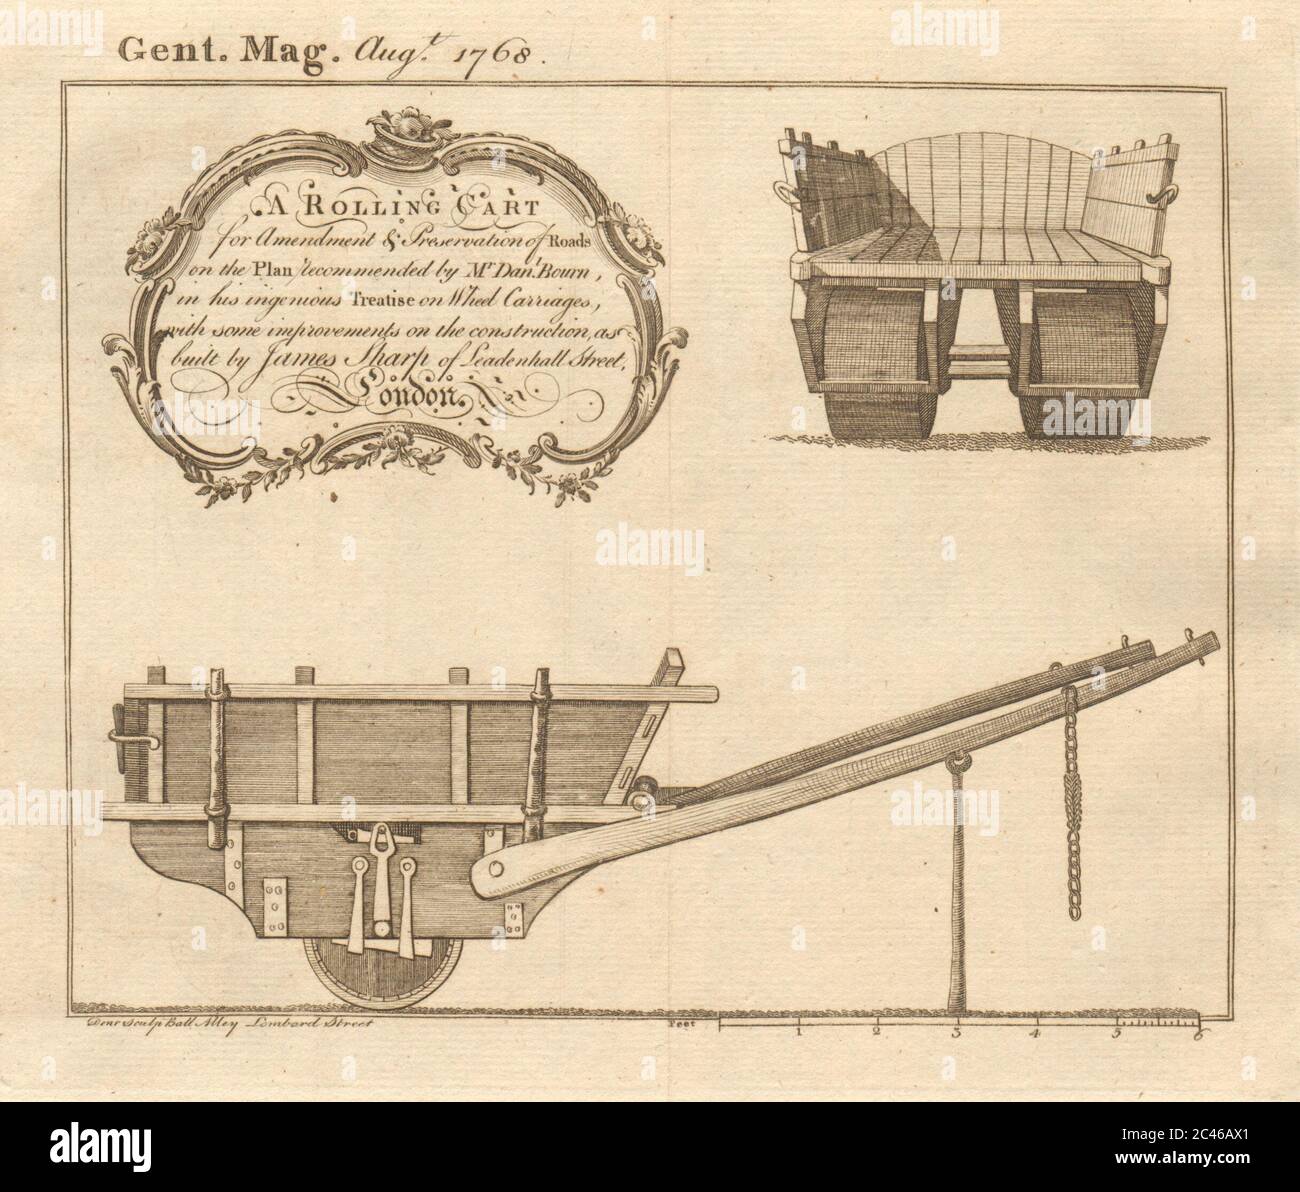 Chariot roulant pour l'entretien des routes. Conception Daniel Bourn. Construit James Sharp en 1768 Banque D'Images